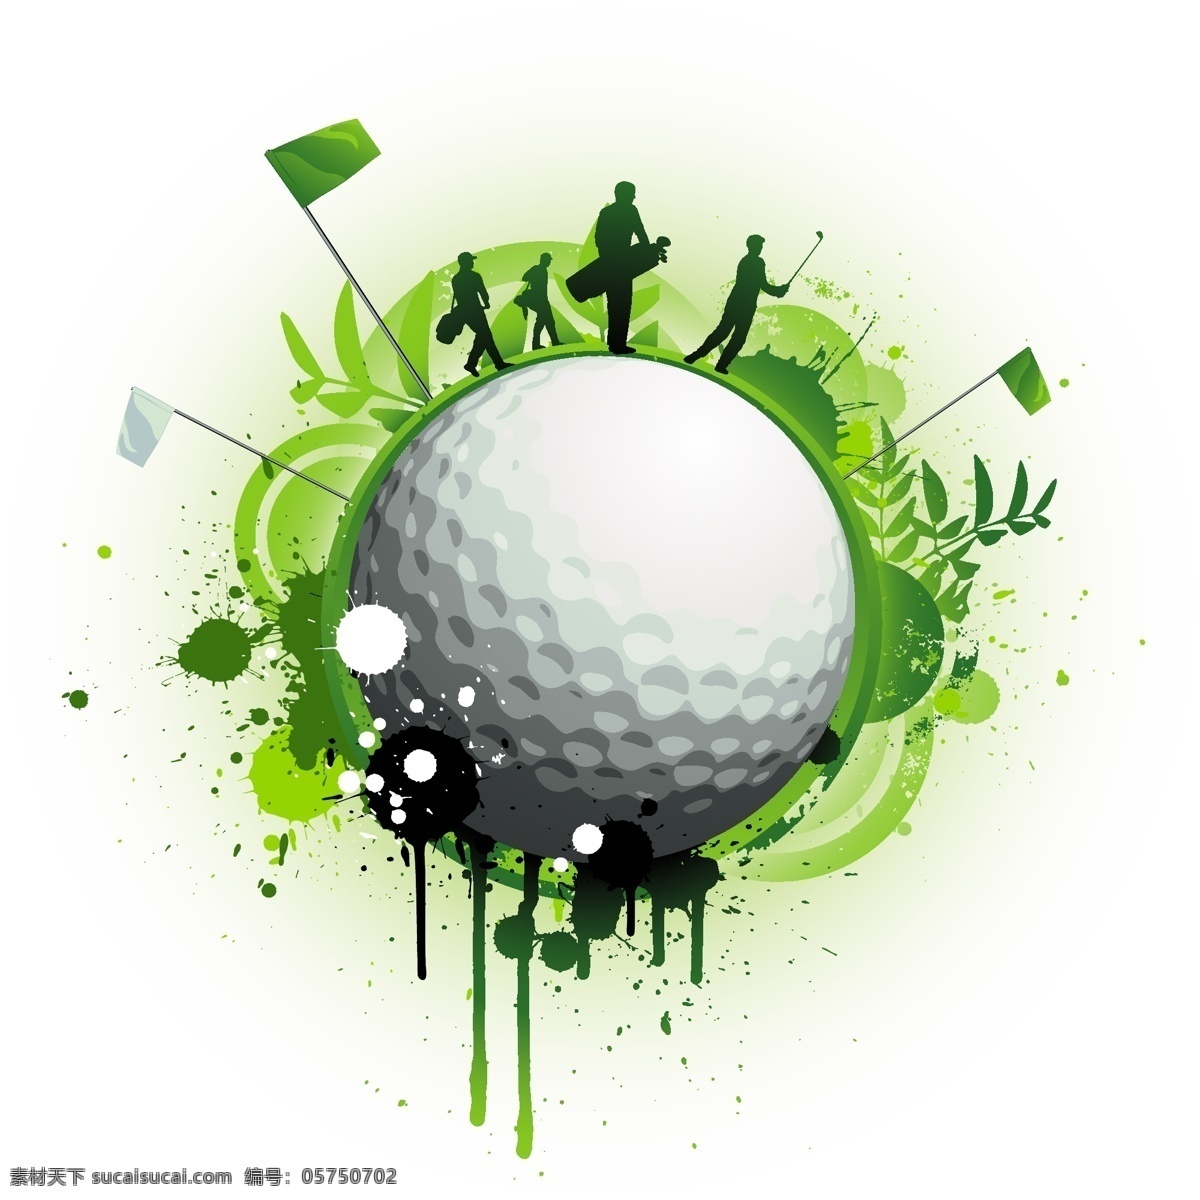 高尔夫 足球 主题 矢量 高尔夫球 轮廓图 矢量图 其他矢量图